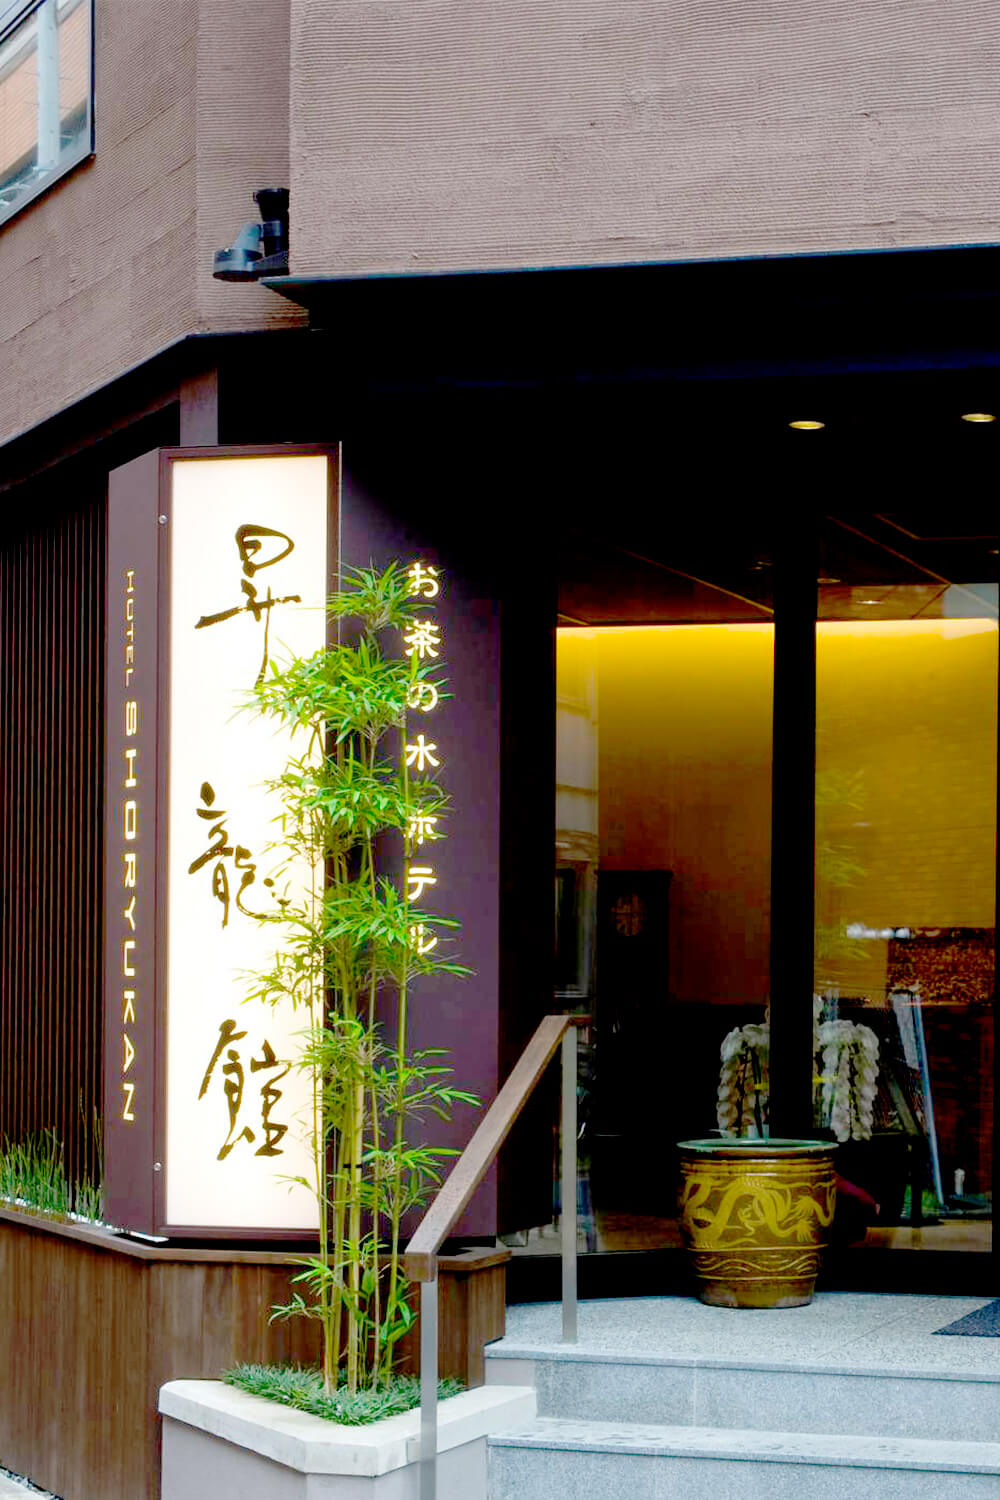 OCHANOMIZU HOTEL SHORYUKAN お茶の水ホテル昇龍館